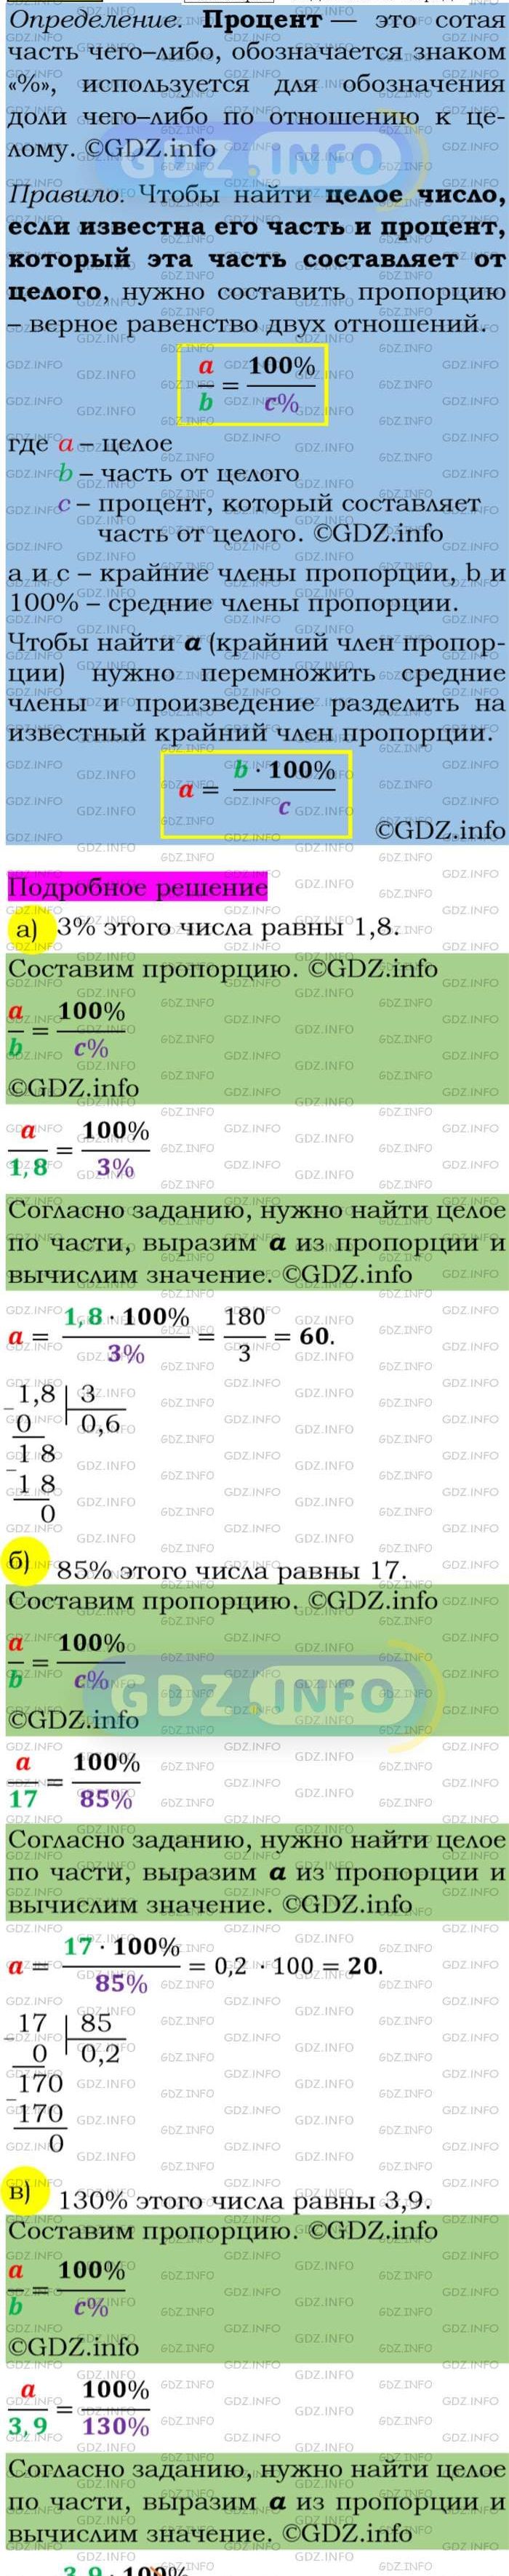 Фото подробного решения: Номер задания №62 из ГДЗ по Алгебре 7 класс: Макарычев Ю.Н.